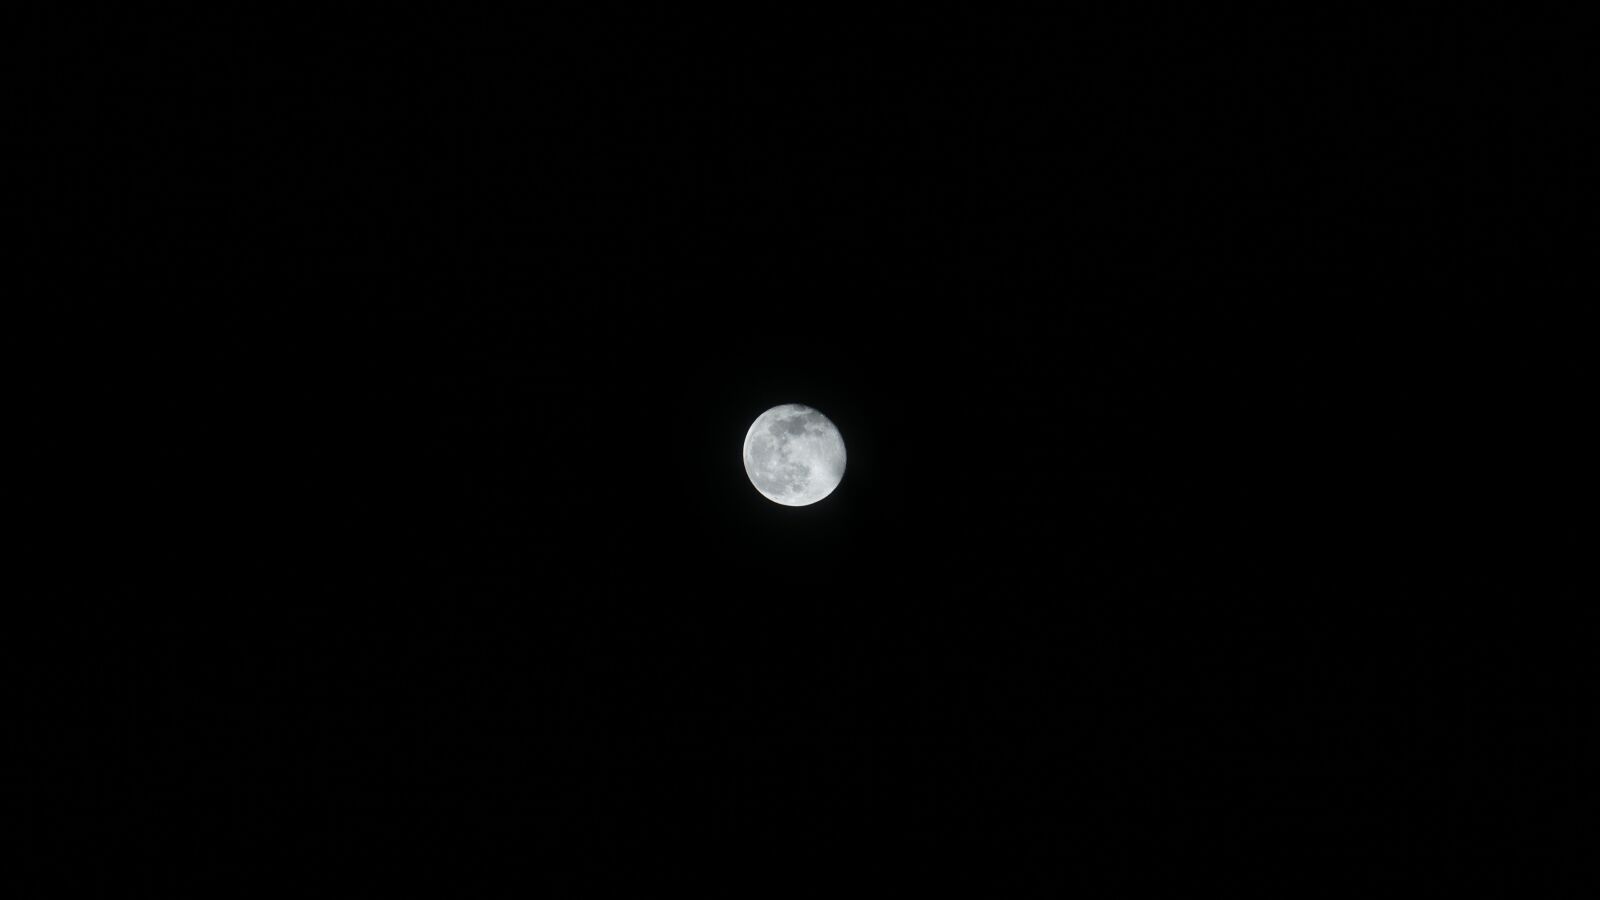 Sony a7 II + Sony FE 24-240mm F3.5-6.3 OSS sample photo. Moon, full moon, night photography